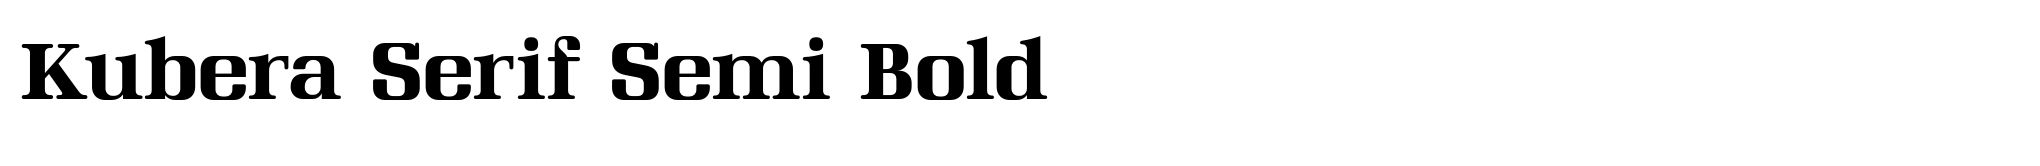 Kubera Serif Semi Bold image